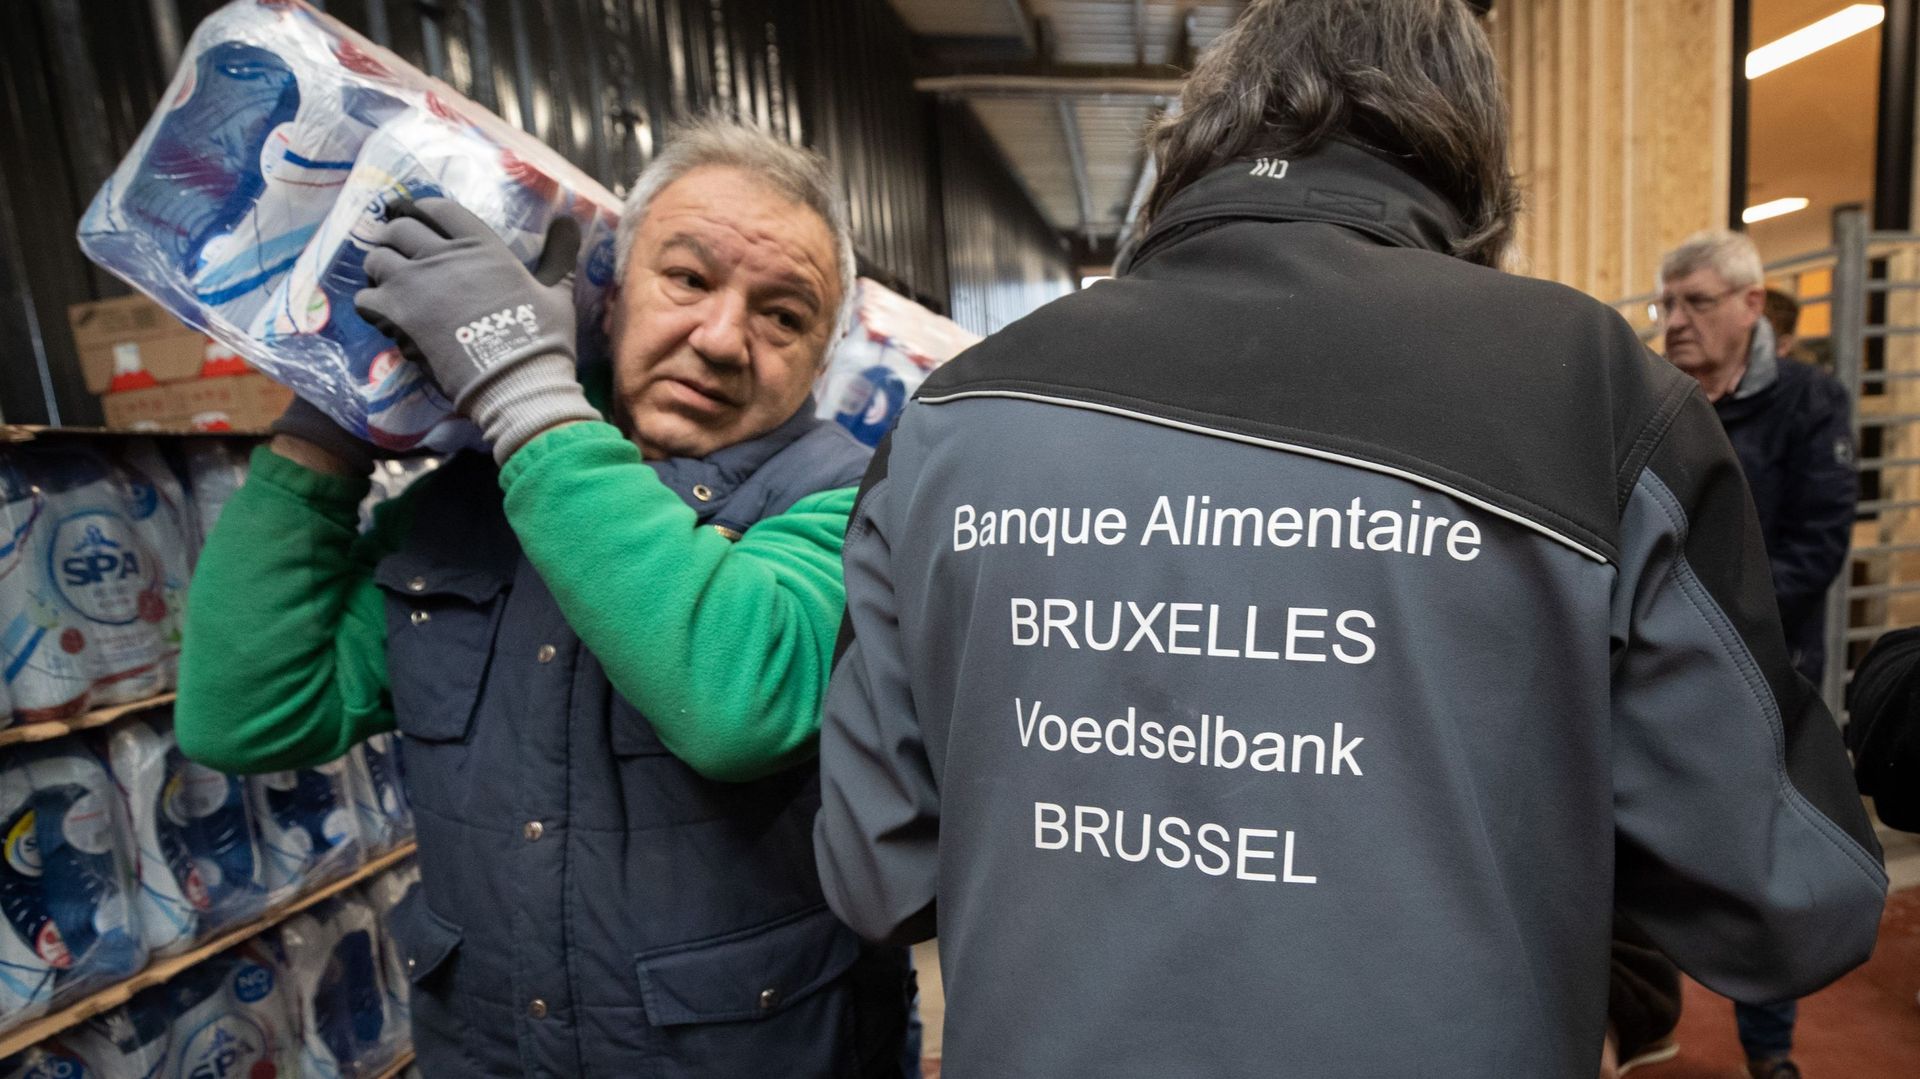 La crise pousse davantage de Belges vers les banques alimentaires